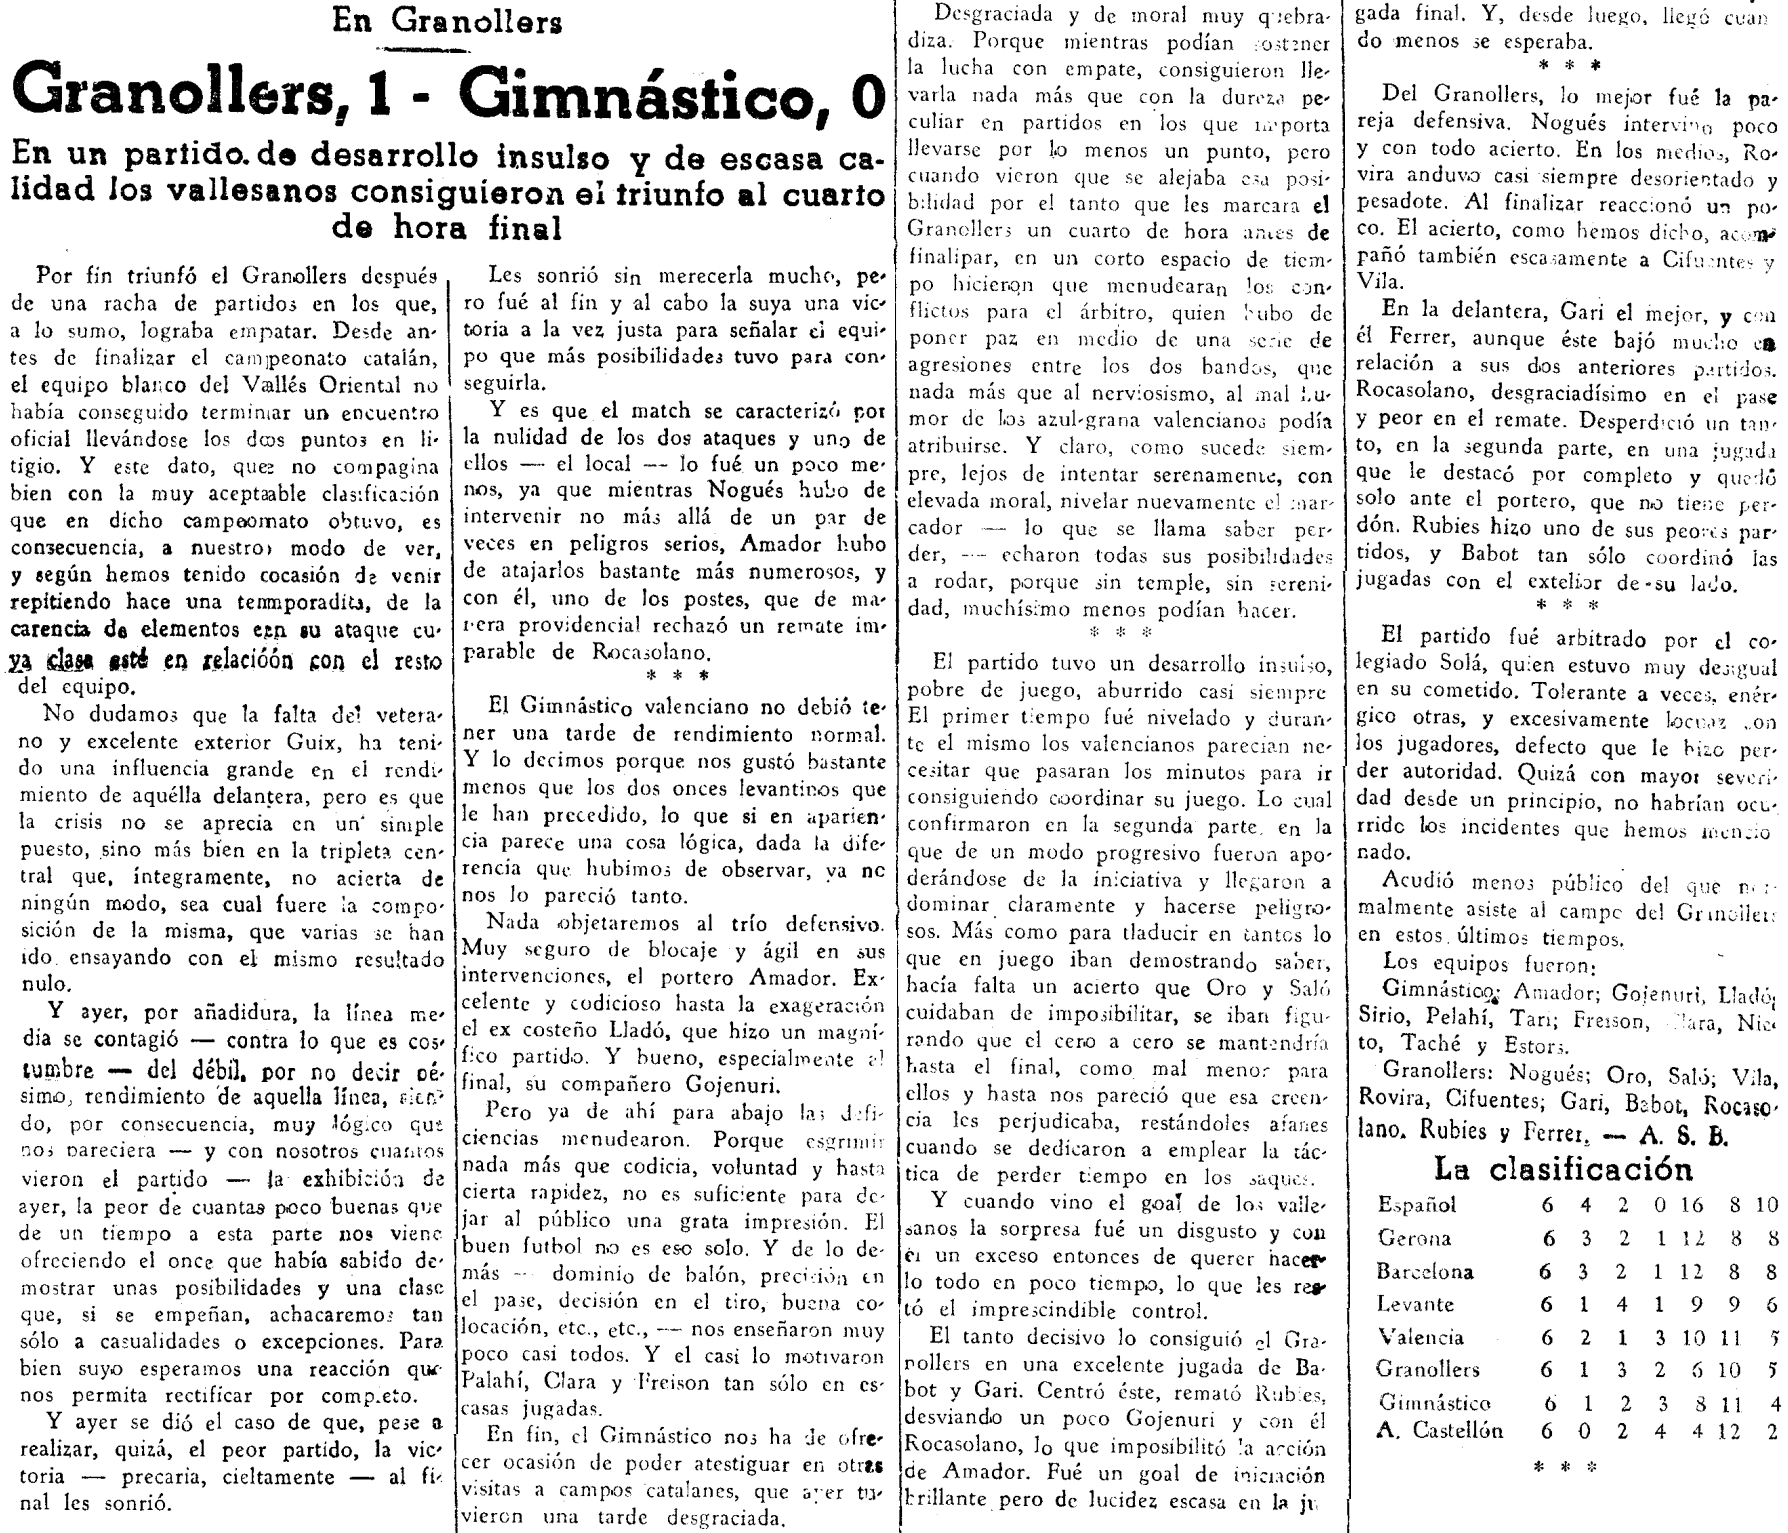 1937.03.07 (7 марта 1937), Гранольерс - Гимнастико, 1-0.png